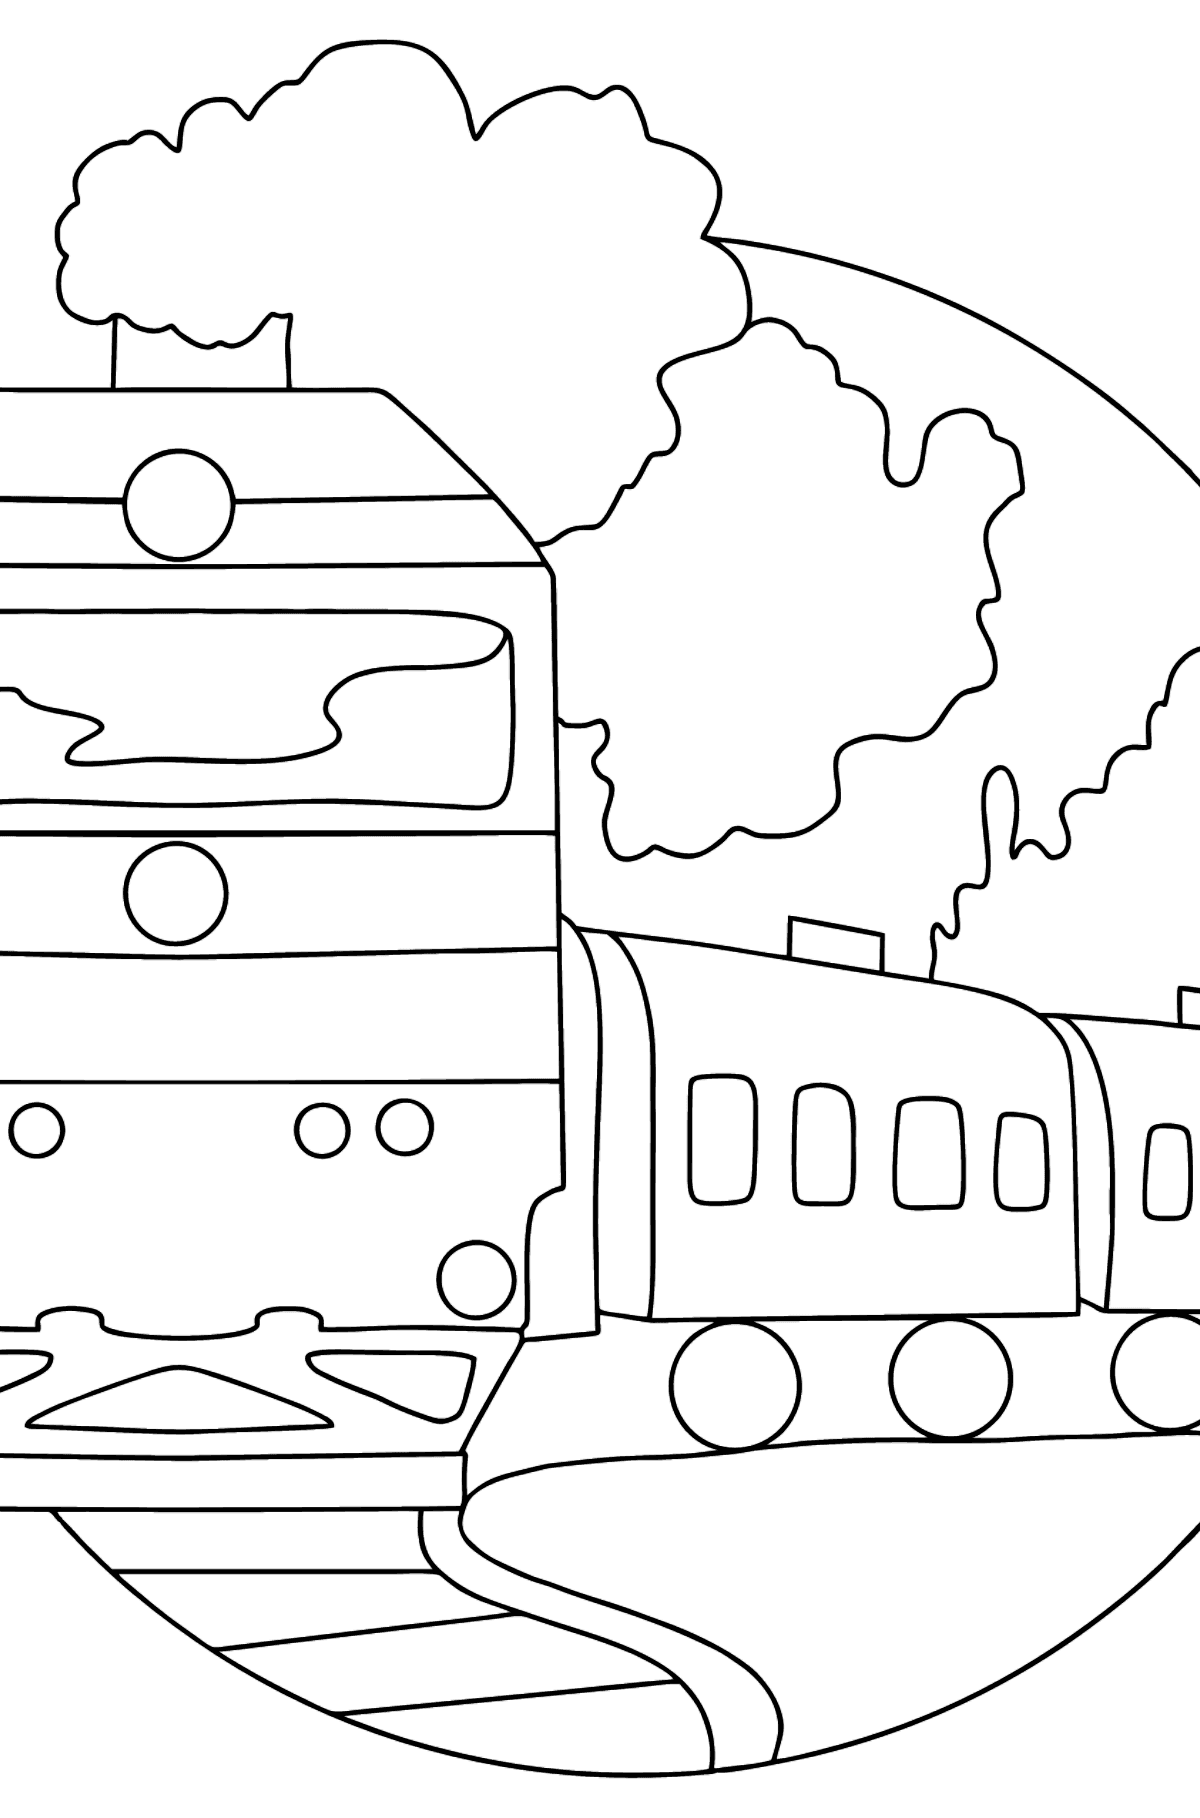 Раскраска поезд с вагонами - Картинки для Детей